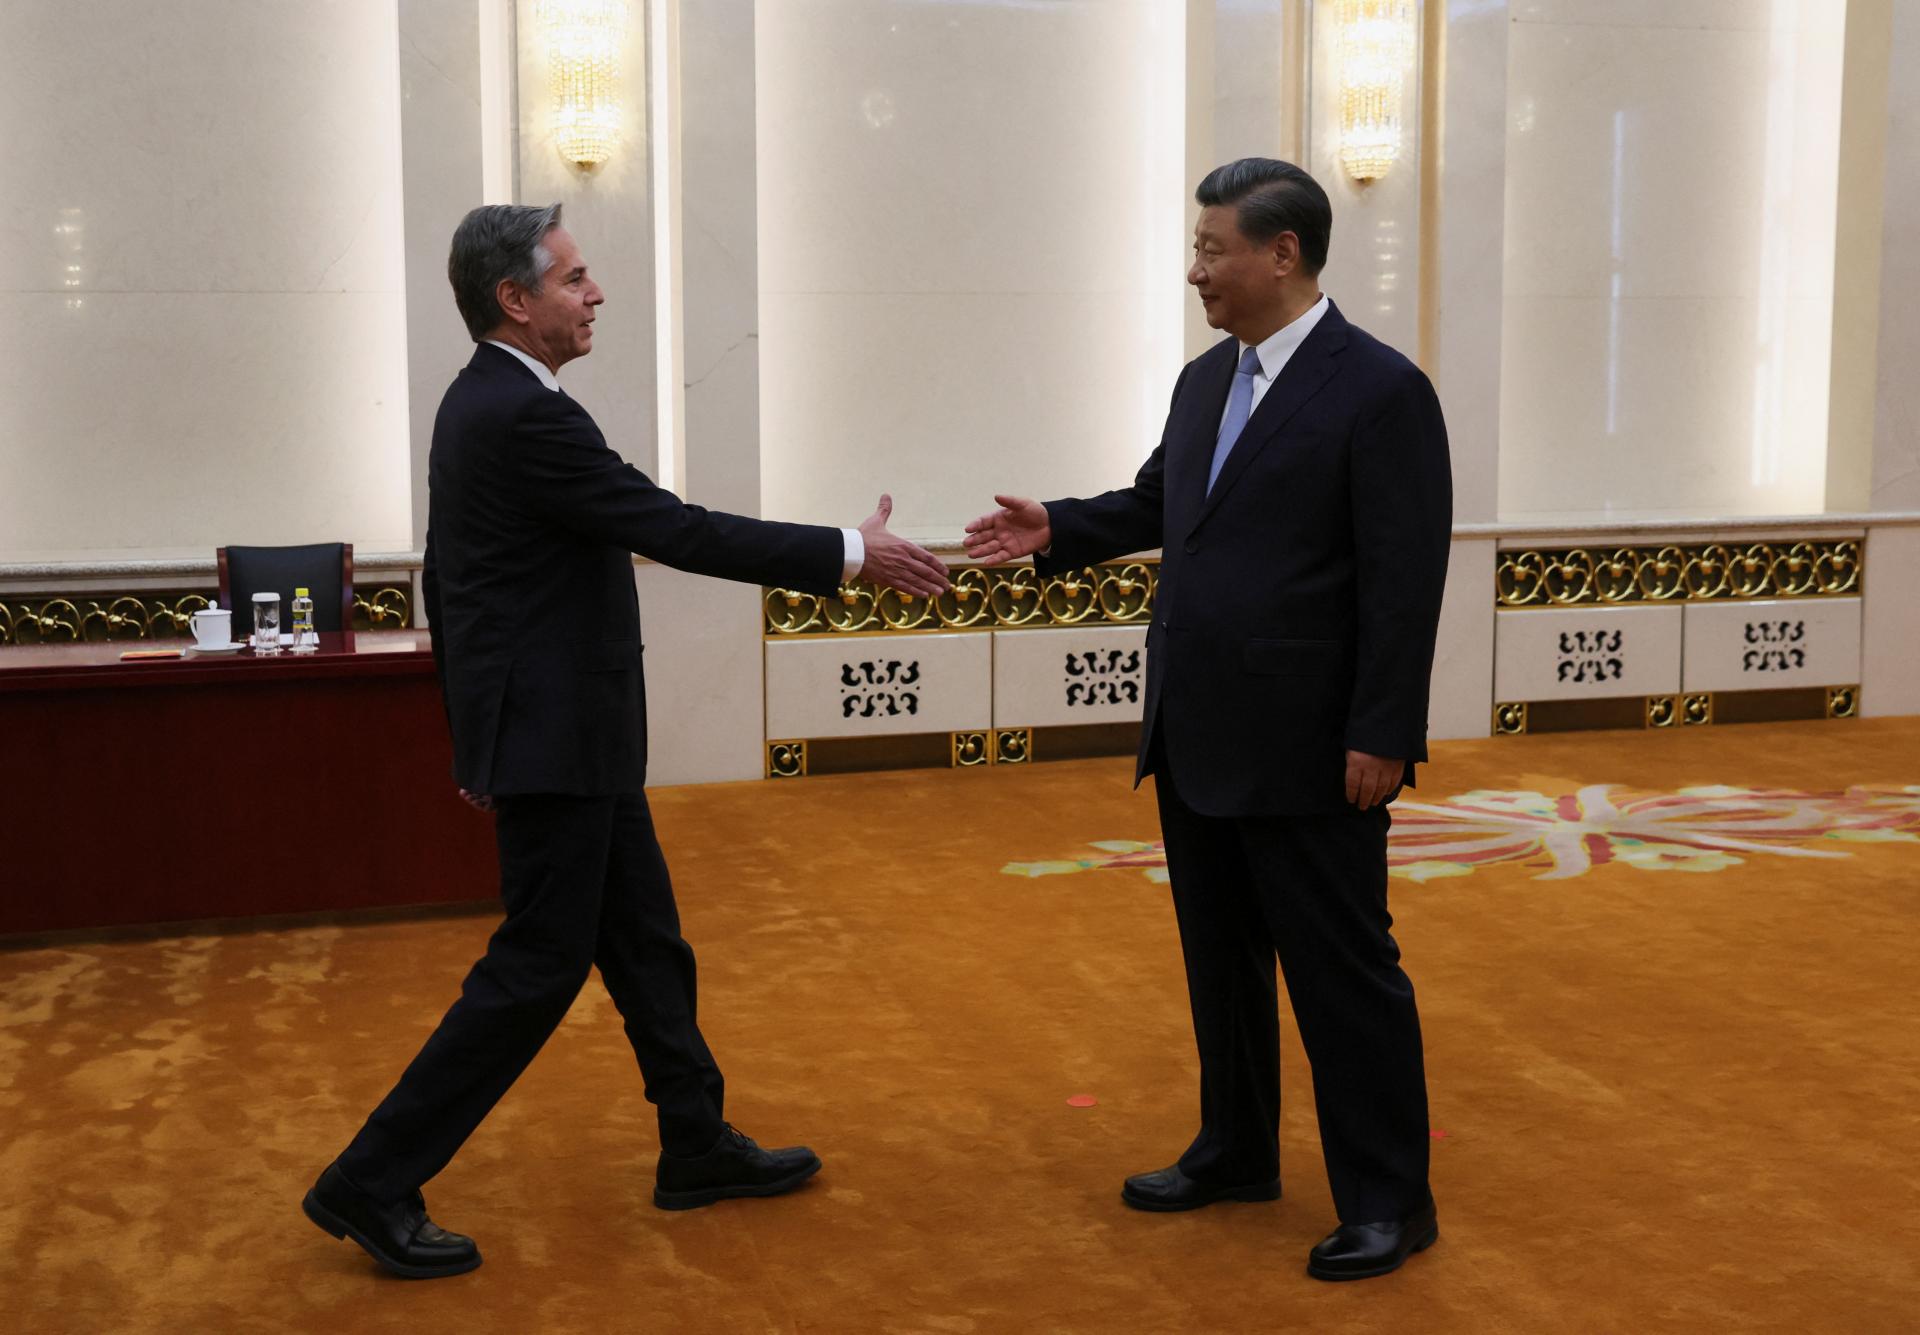 Bidenov minister v Pekingu: Pripravuje sa nové kúskovanie sveta?